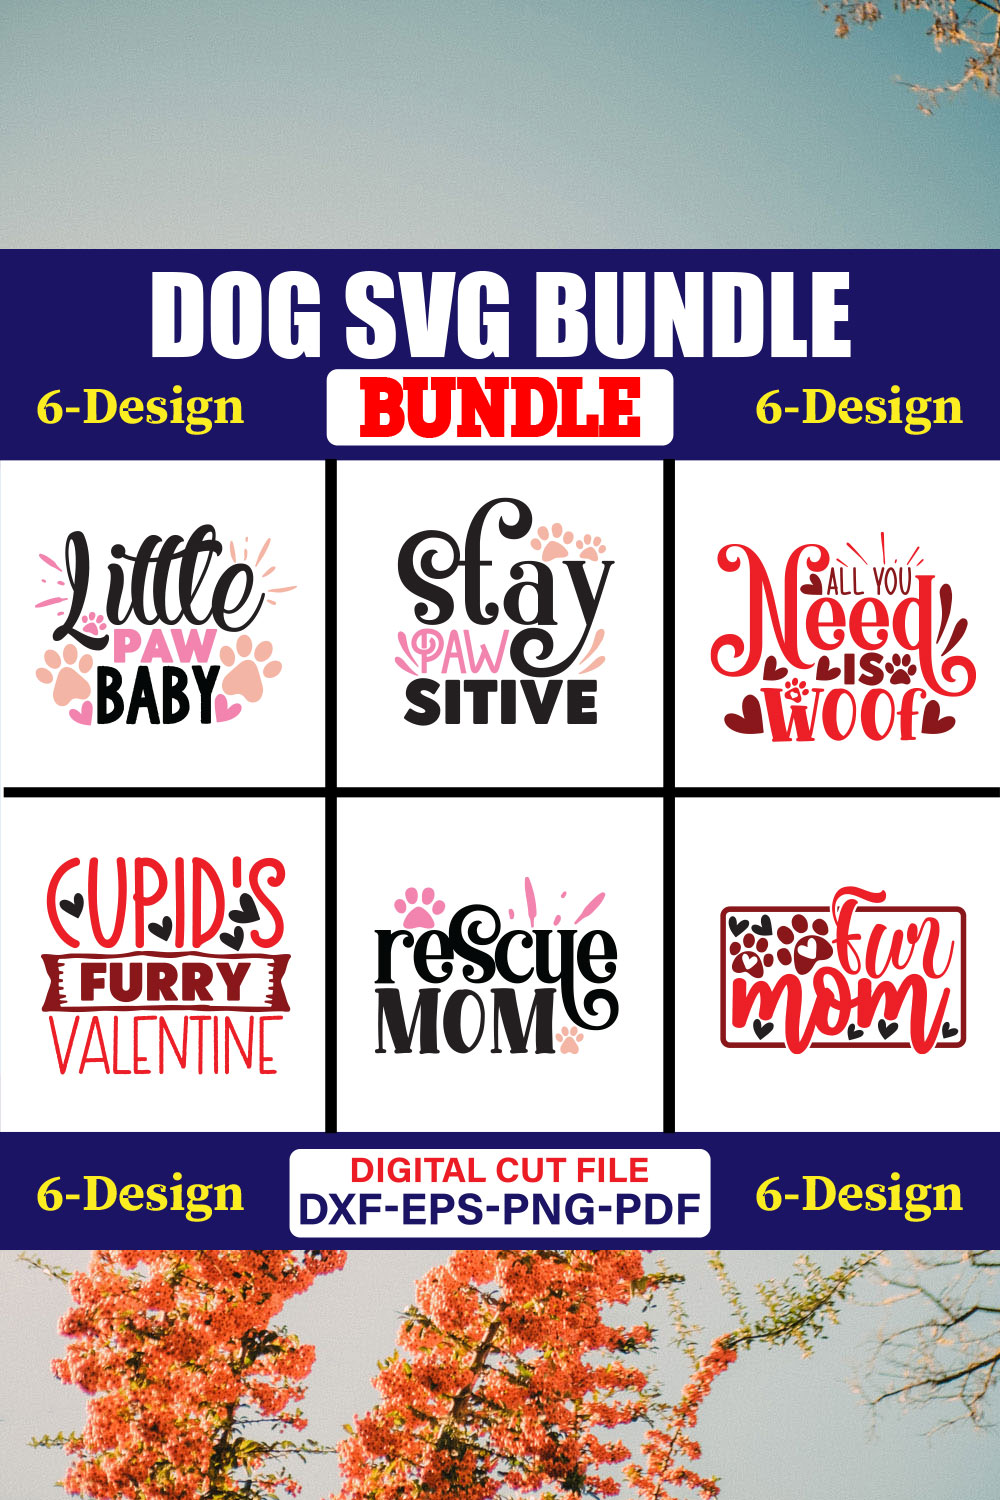 Dog SVG T-shirt Design Bundle Vol-18 pinterest preview image.